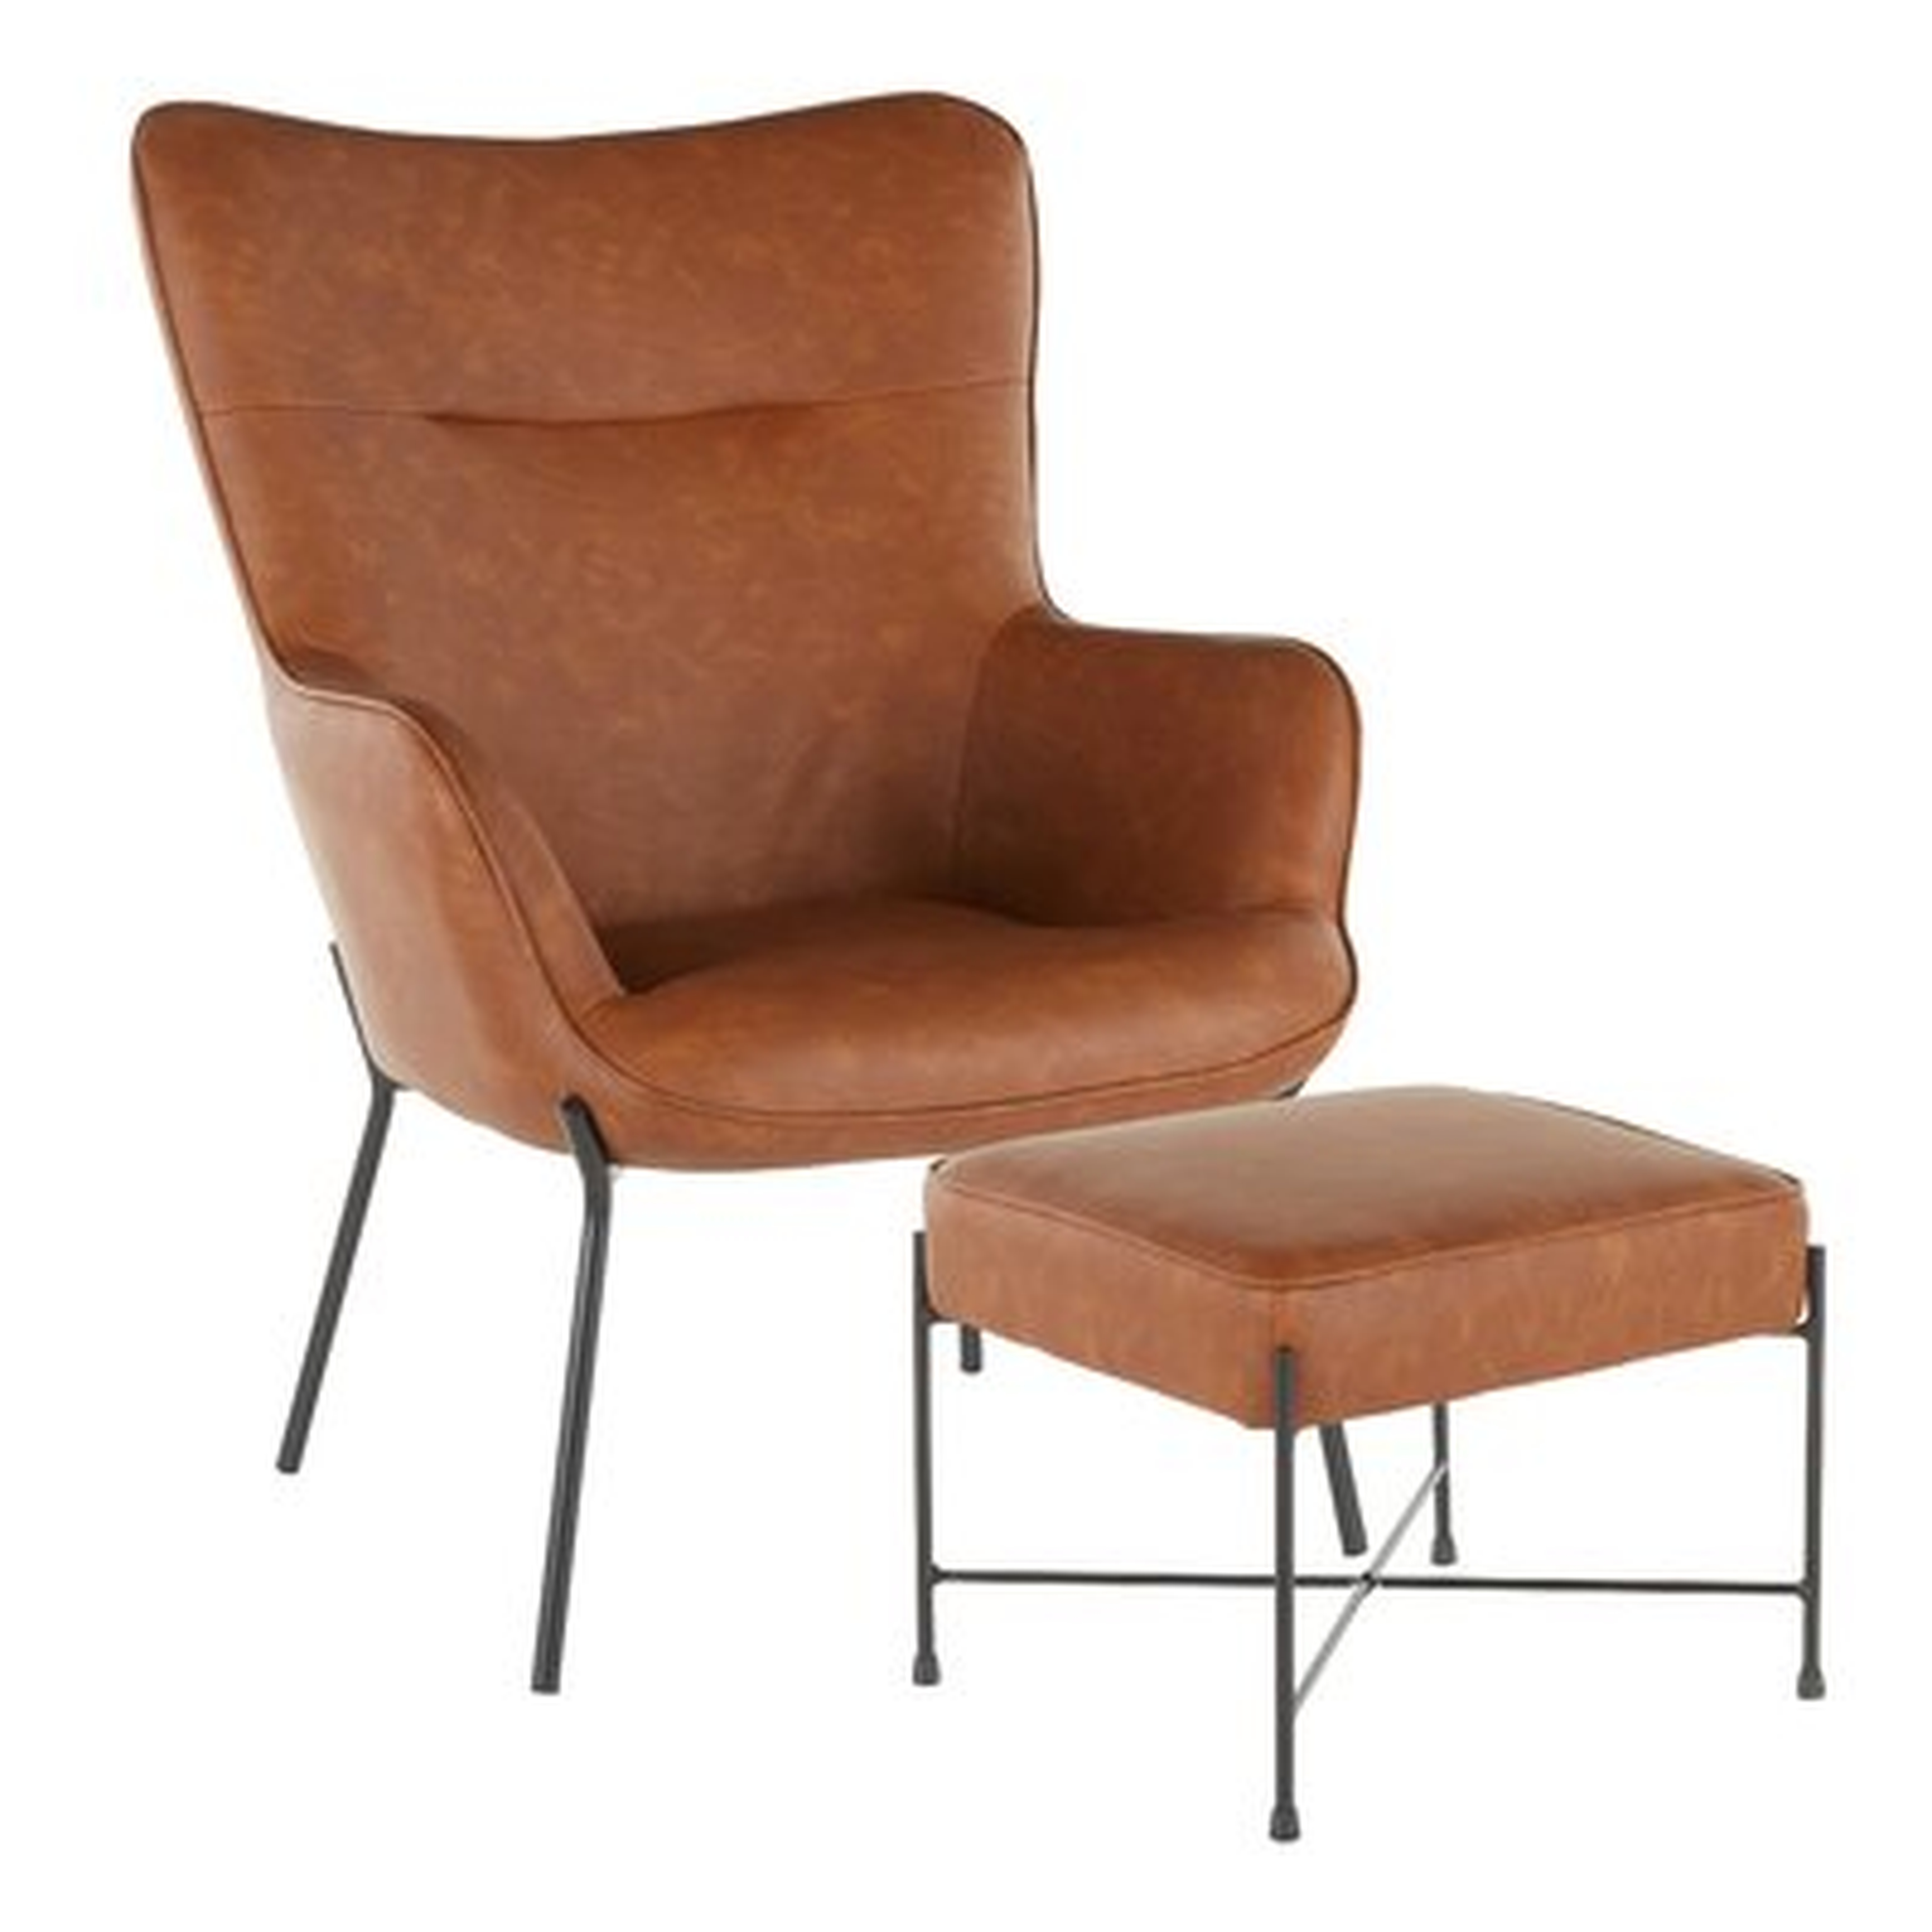 Tedeschi Lounge Chair and Ottoman - Wayfair